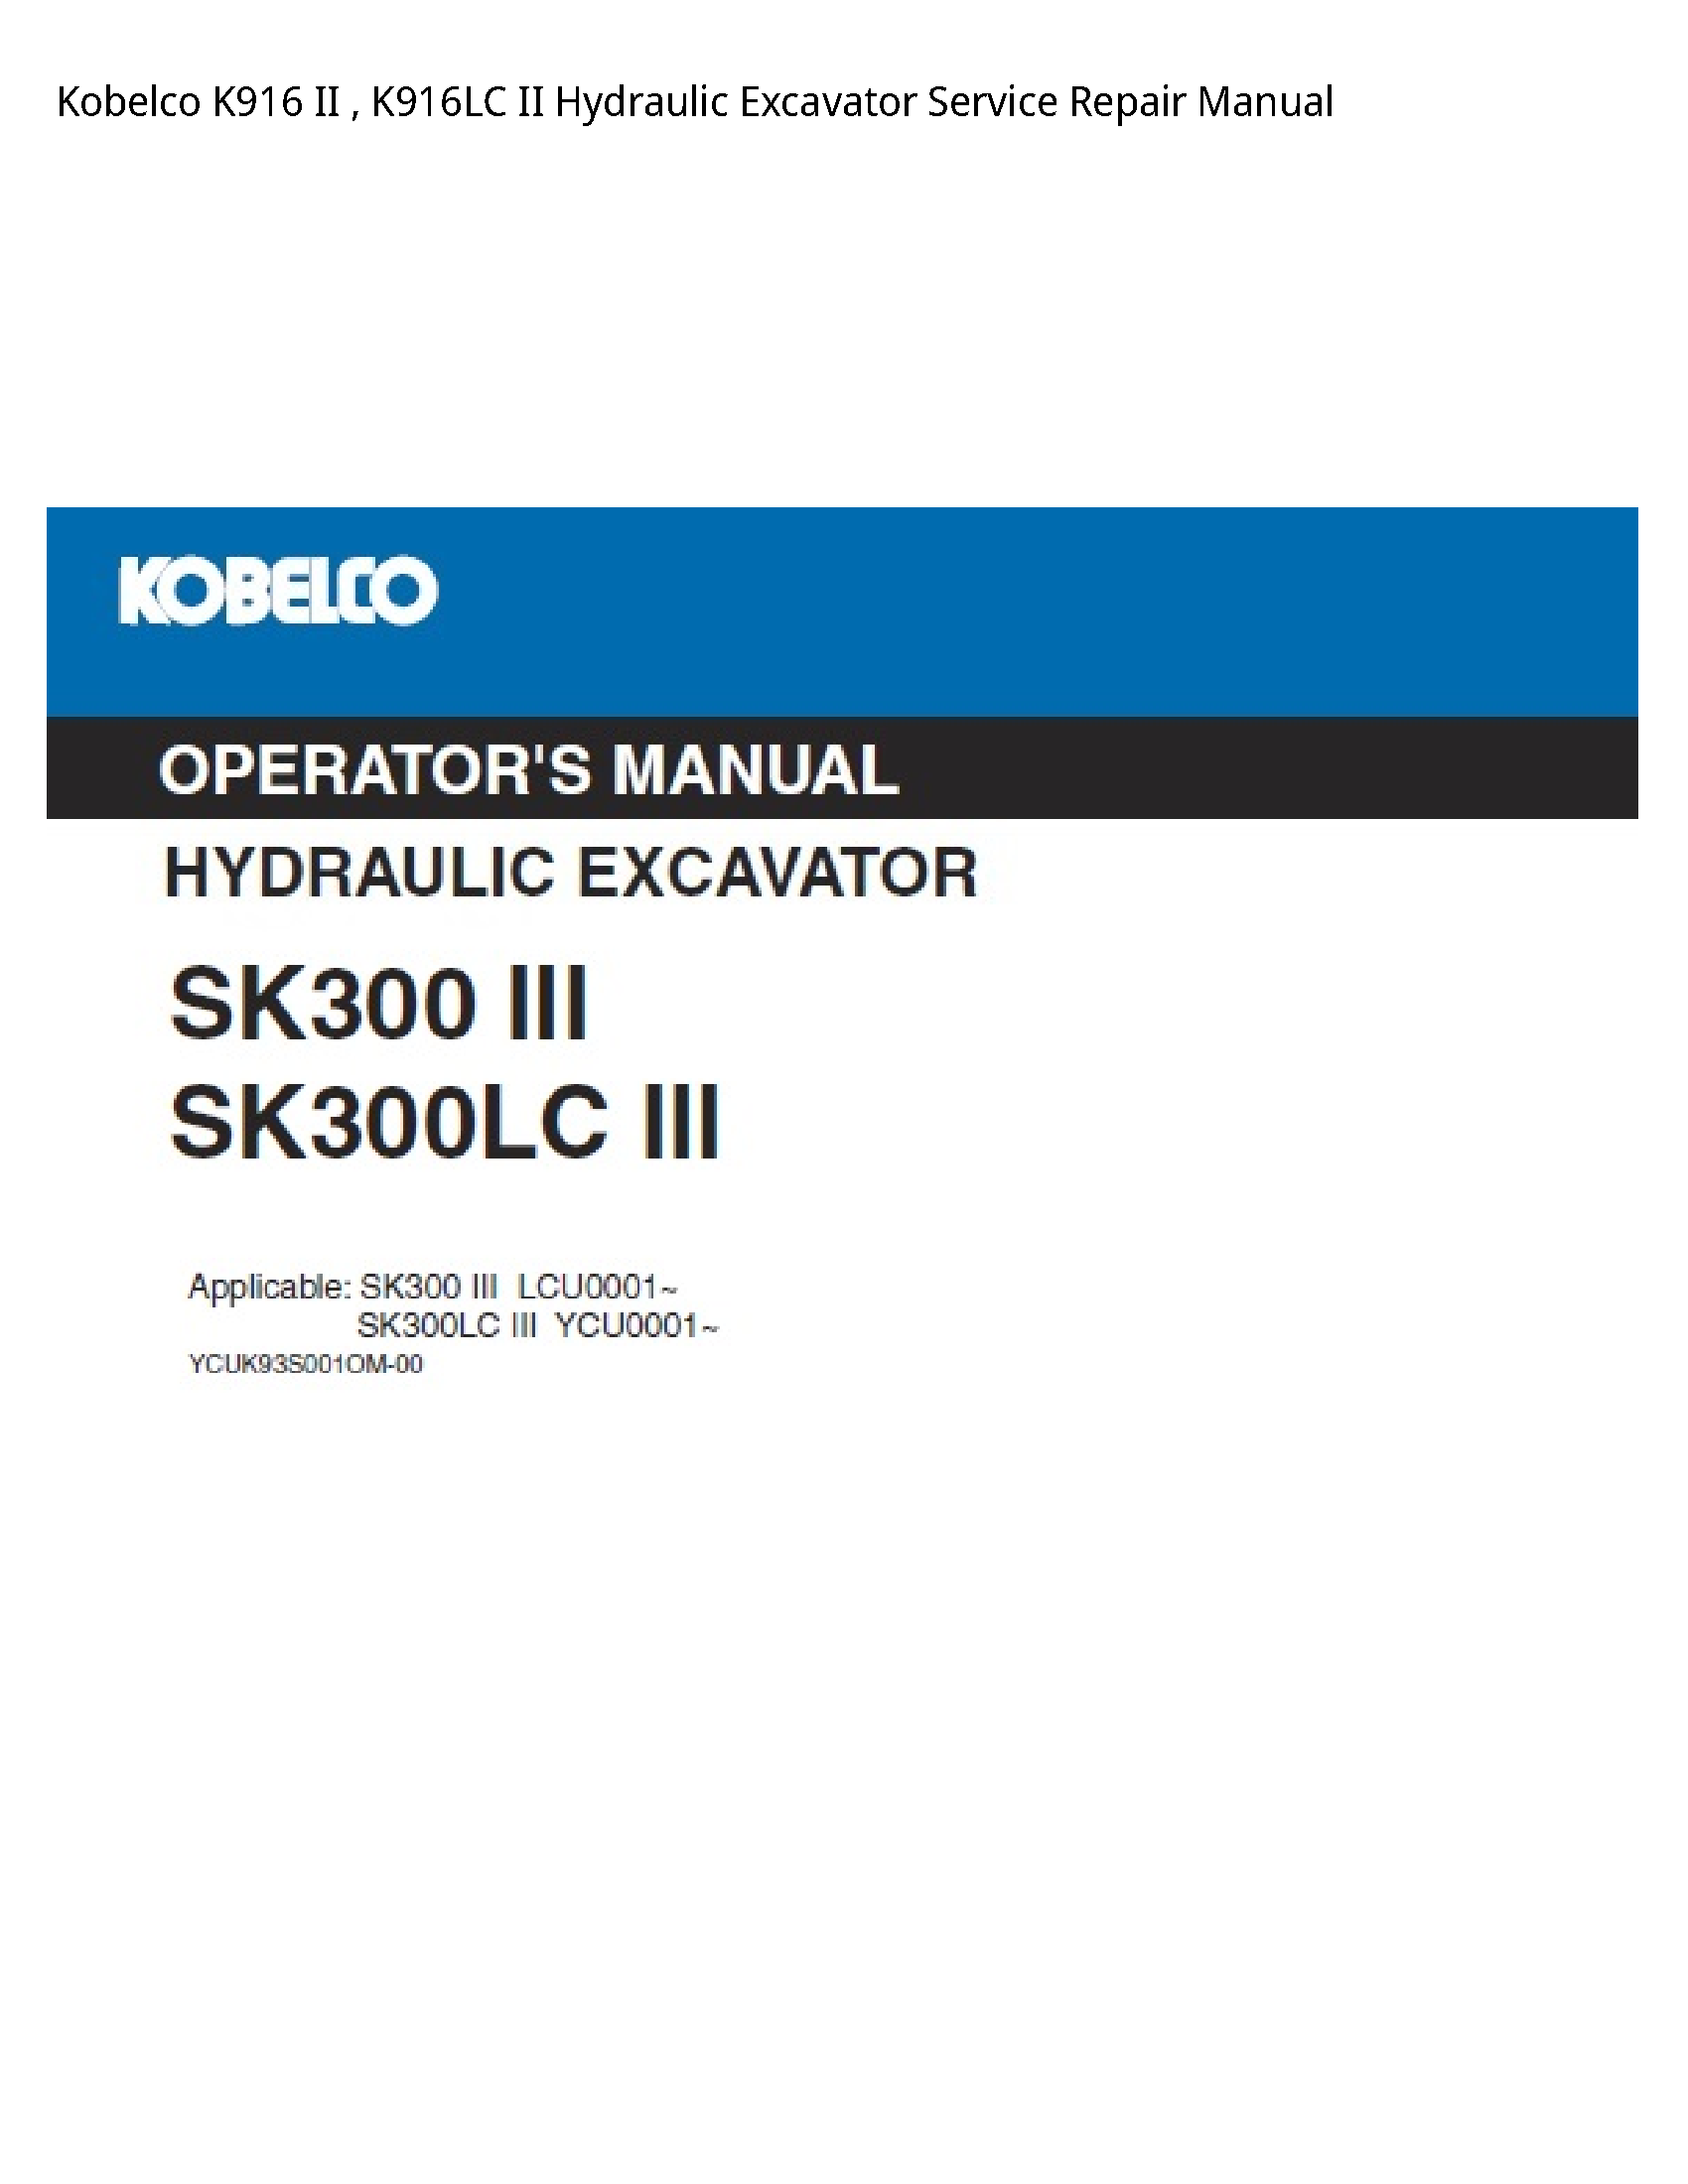 Kobelco K916 II II Hydraulic Excavator manual